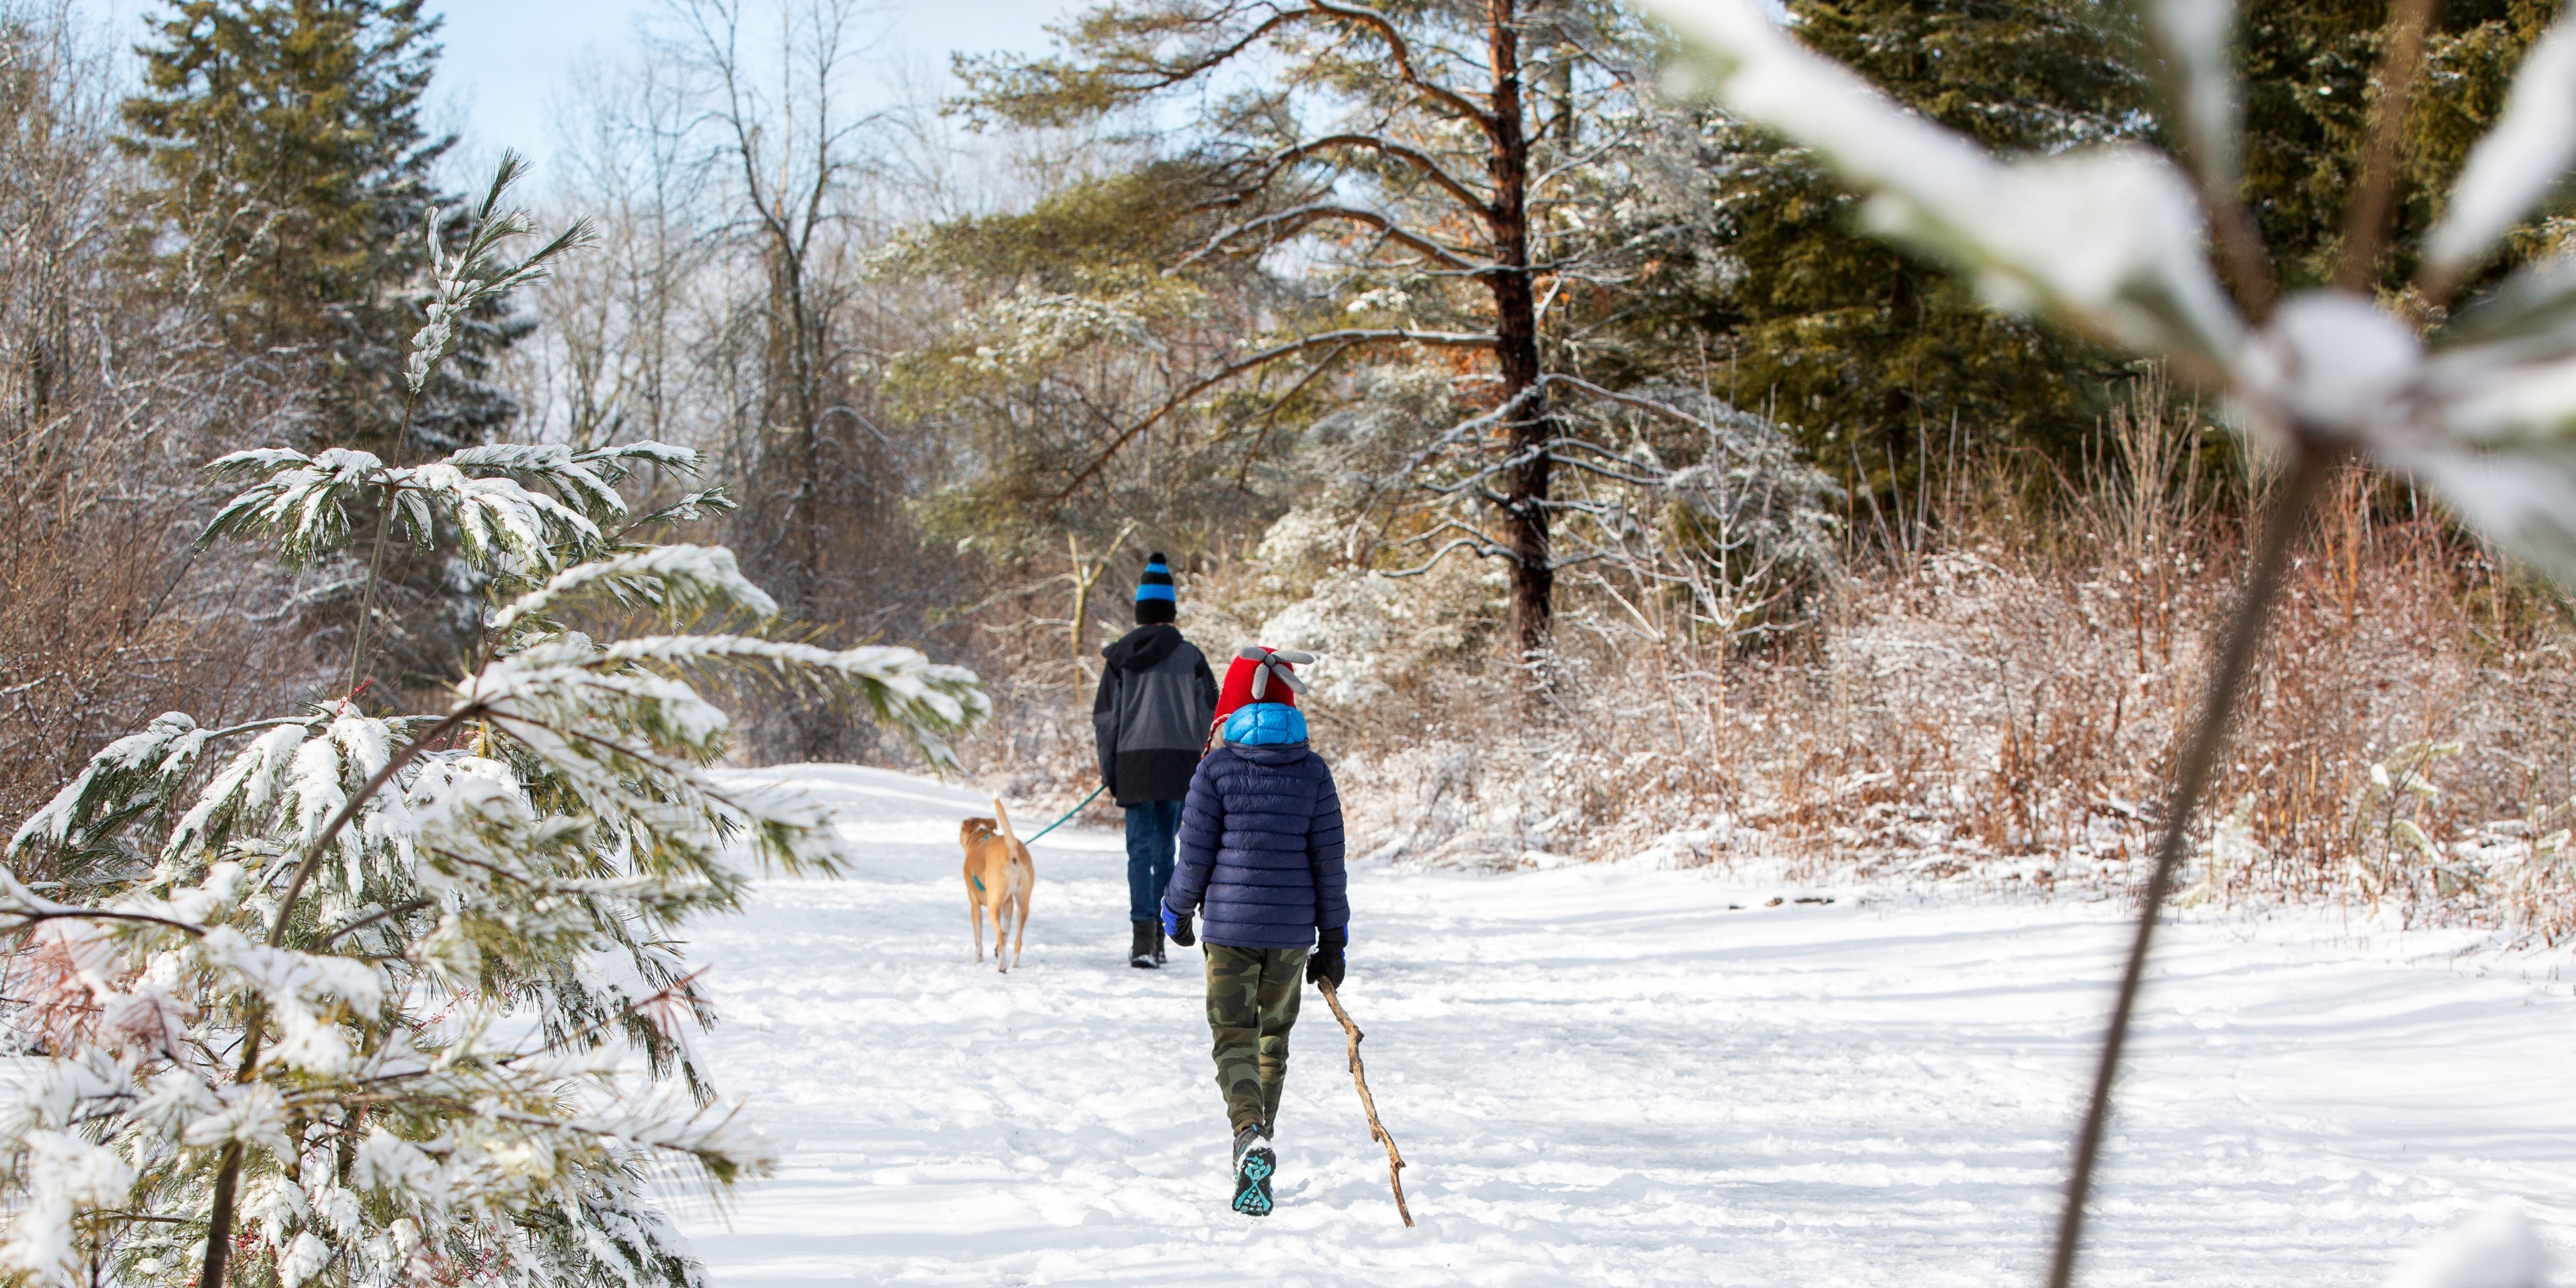 People walking on trail in winter